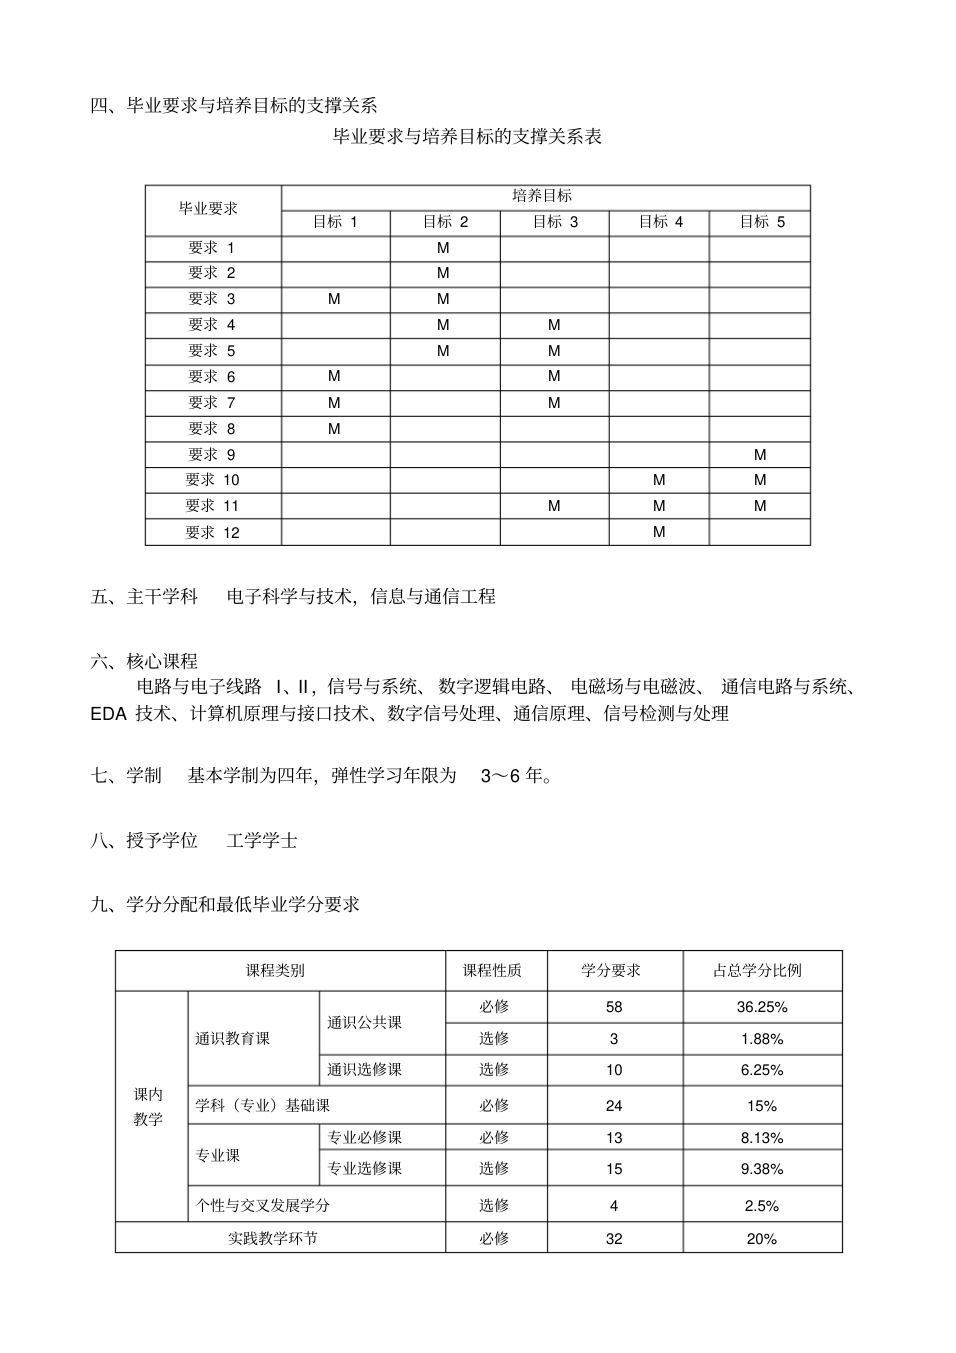 杭州电子科技大学2017级电子信息工程专业培养方案_2.png